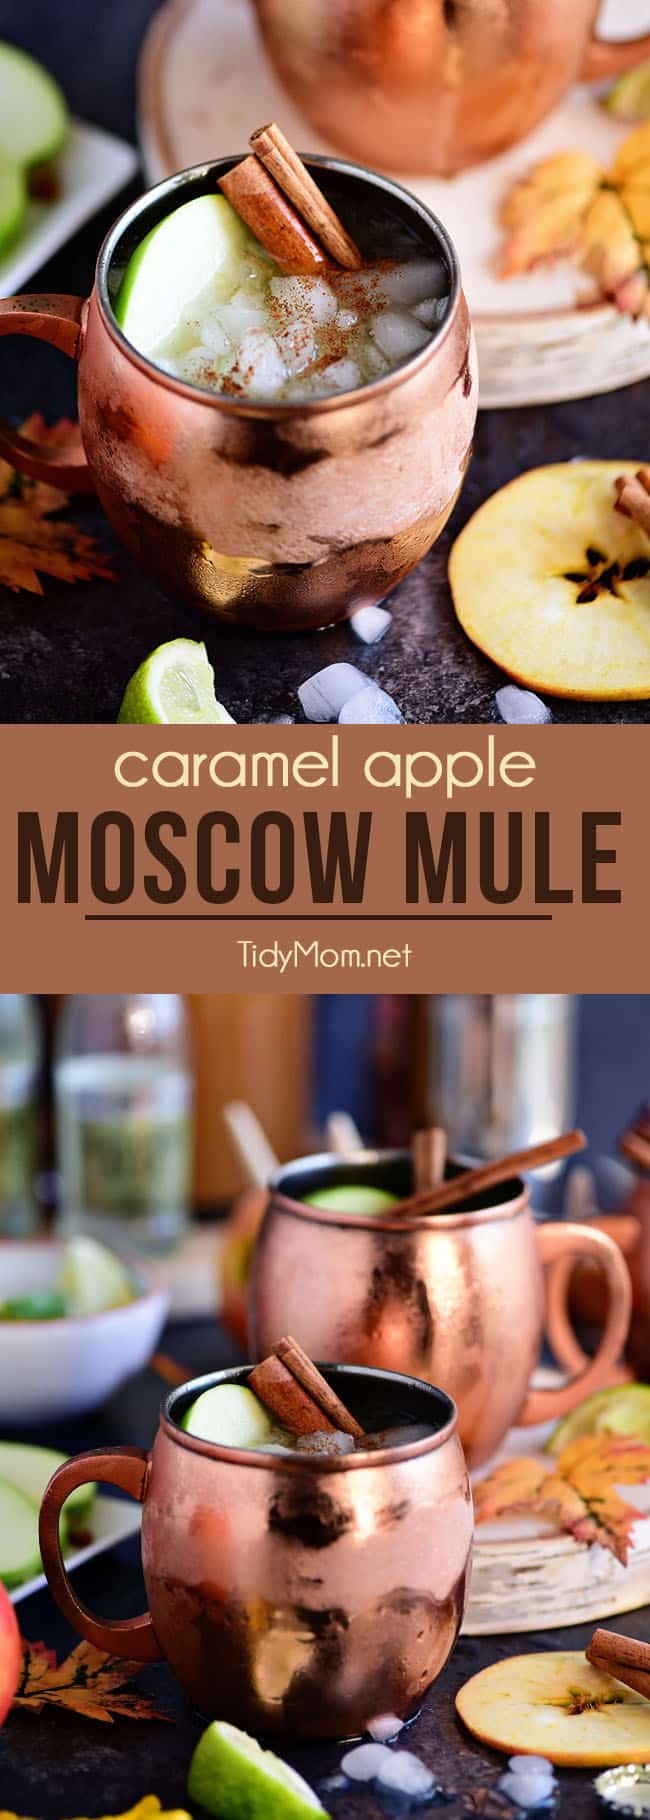 en karamel æble Moskva muldyr er perfekt til efteråret! Lavet med sød karamelvodka, frisk æblecider og ingefærøl er det sikker på at blive en favorit efterårscocktail! Få opskriften på TidyMom.net